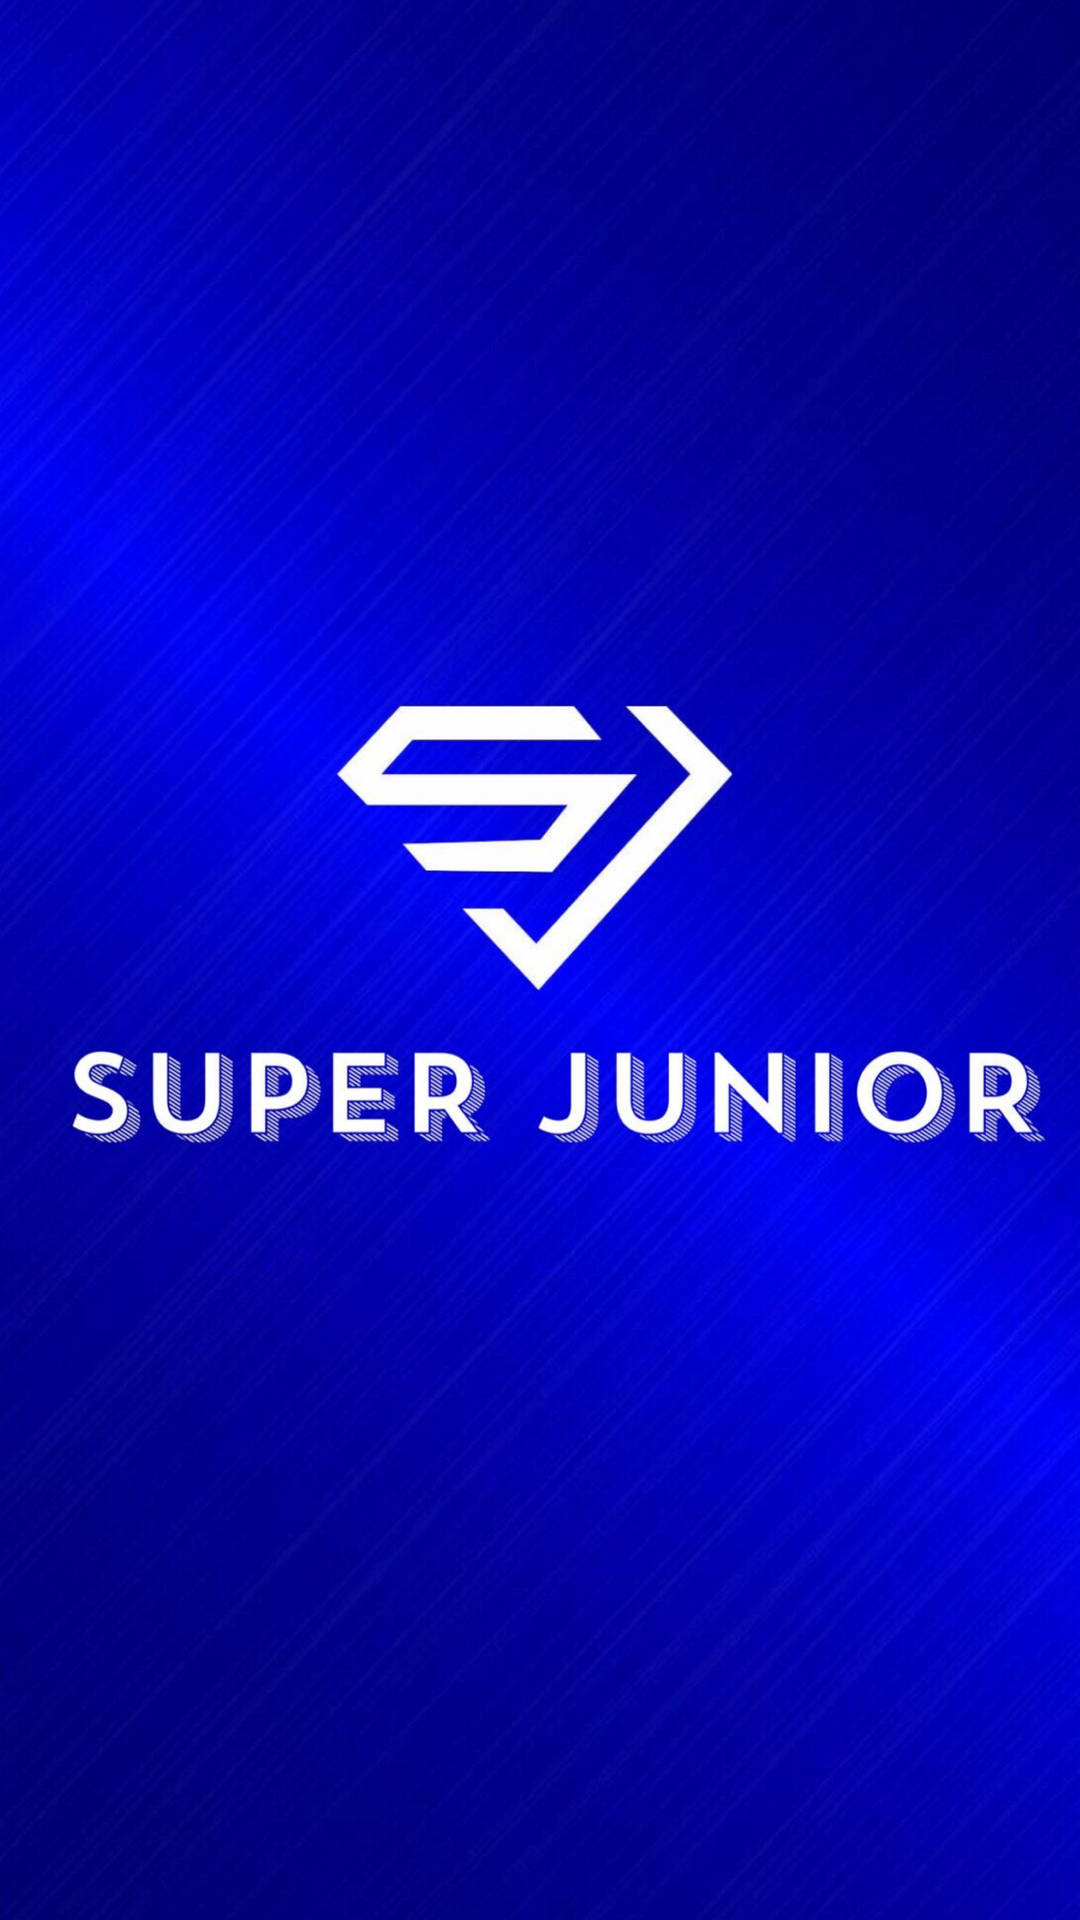 Super Junior Plain Logo